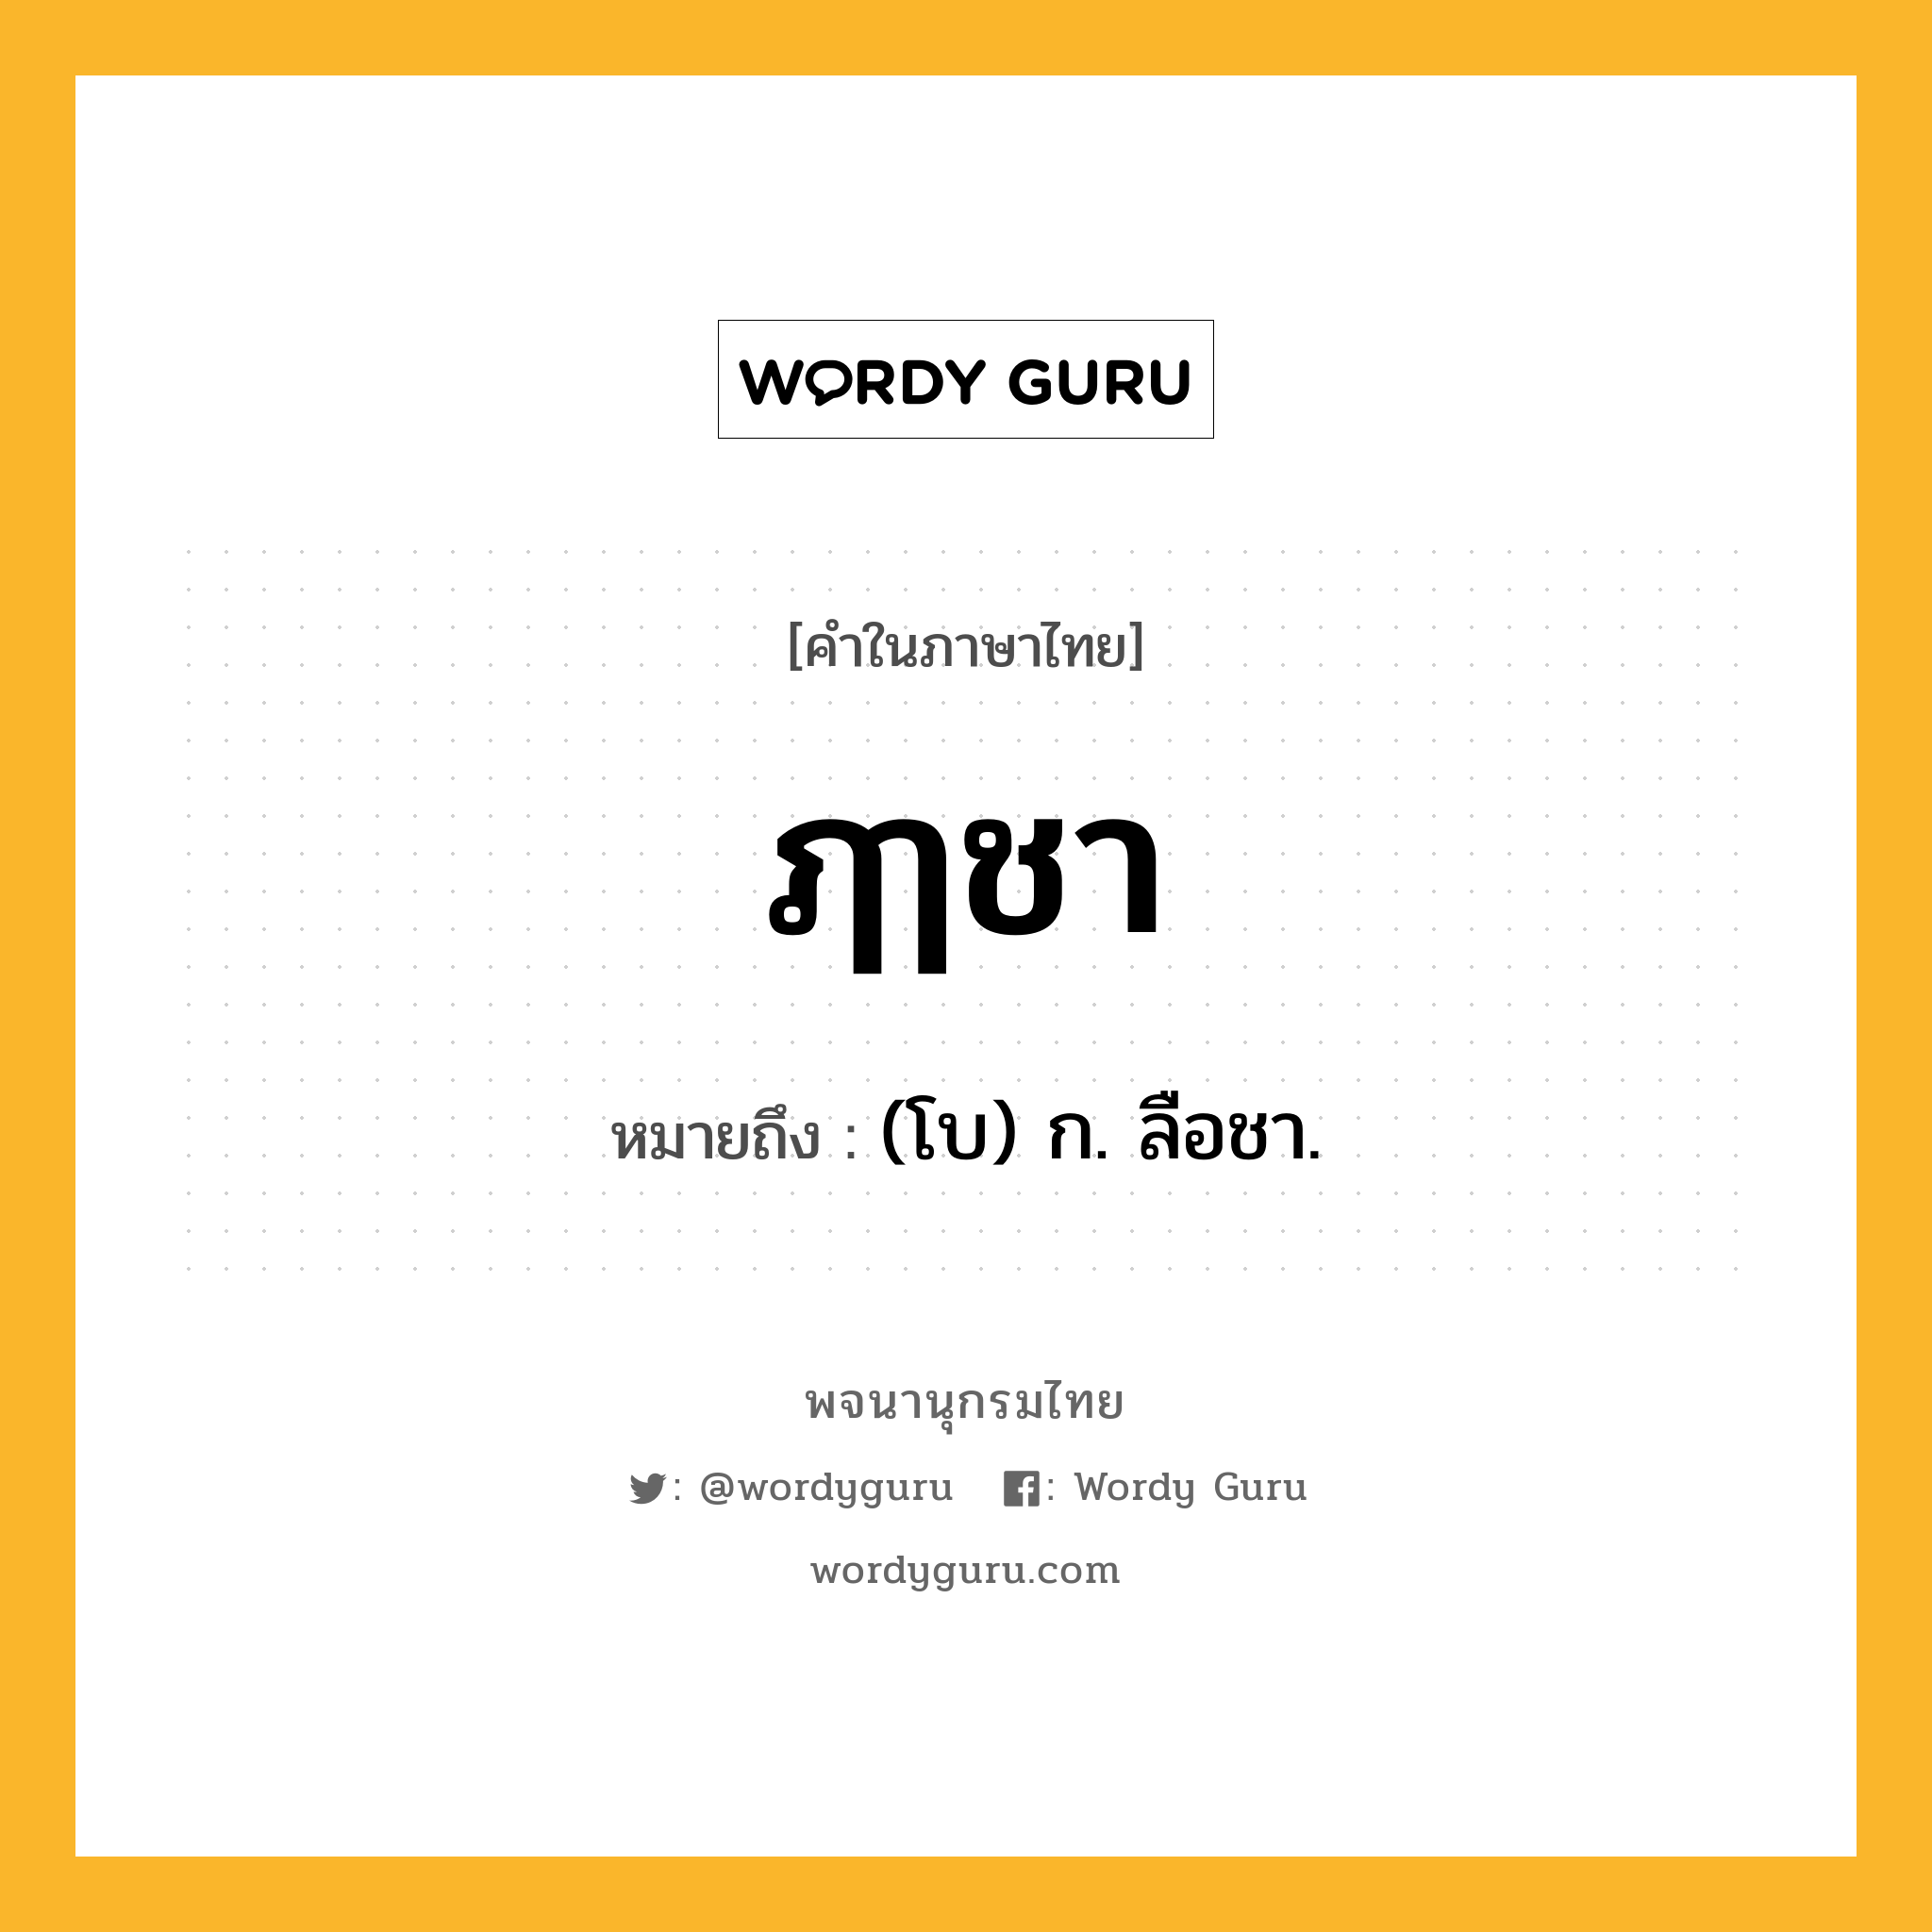 ฦๅชา ความหมาย หมายถึงอะไร?, คำในภาษาไทย ฦๅชา หมายถึง (โบ) ก. ลือชา.